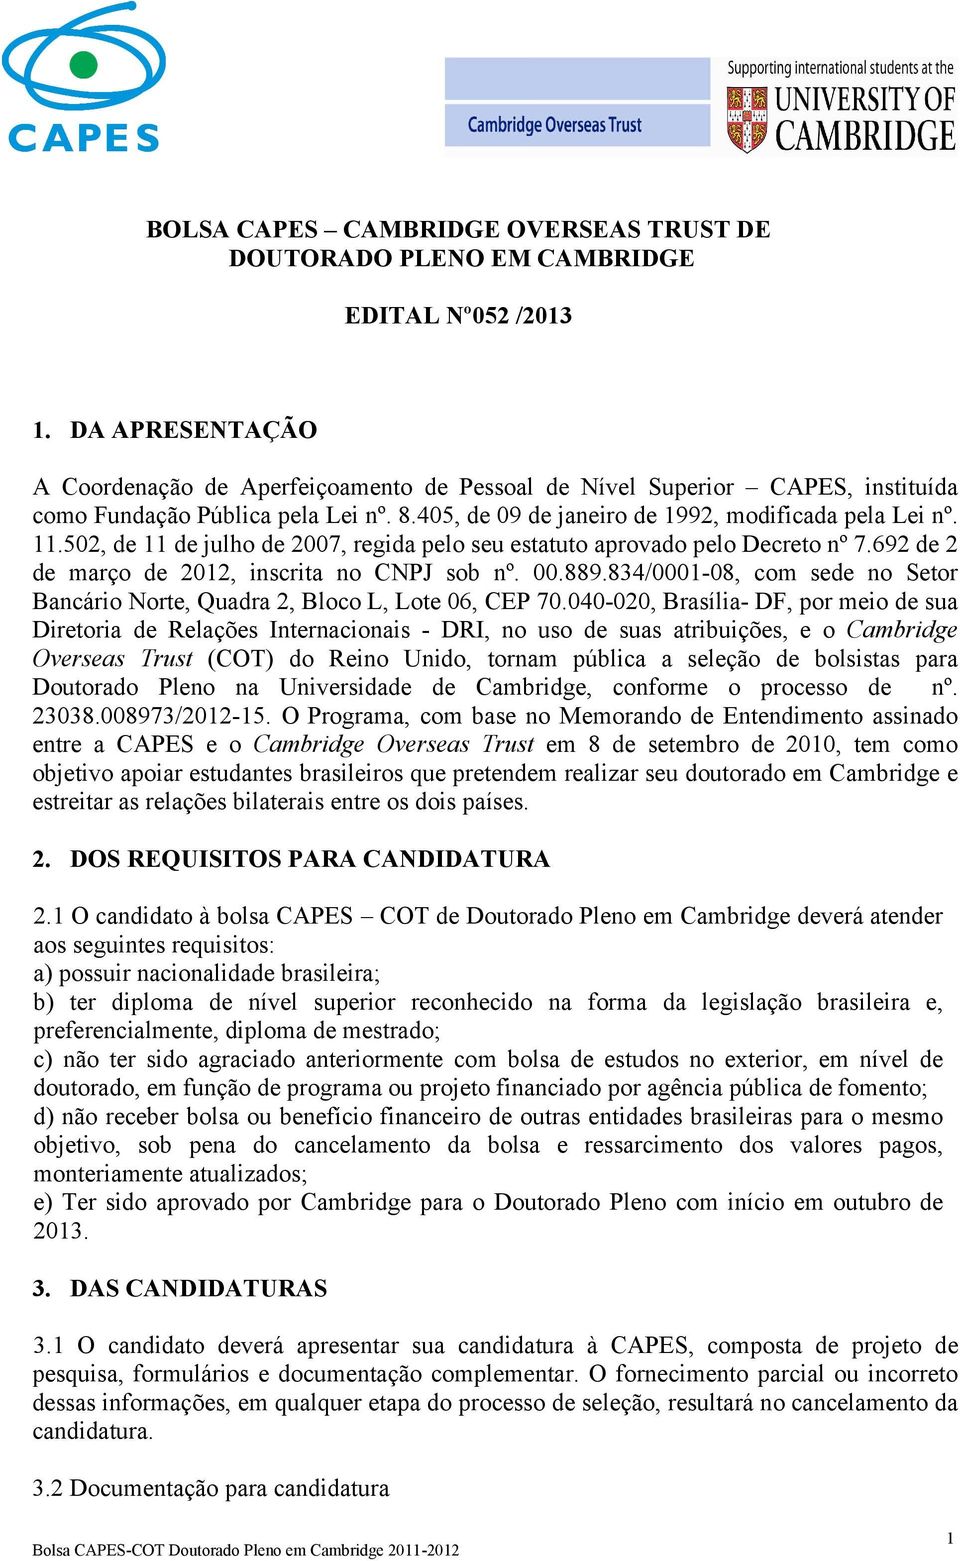 502, de 11 de julho de 2007, regida pelo seu estatuto aprovado pelo Decreto nº 7.692 de 2 de março de 2012, inscrita no CNPJ sob nº. 00.889.